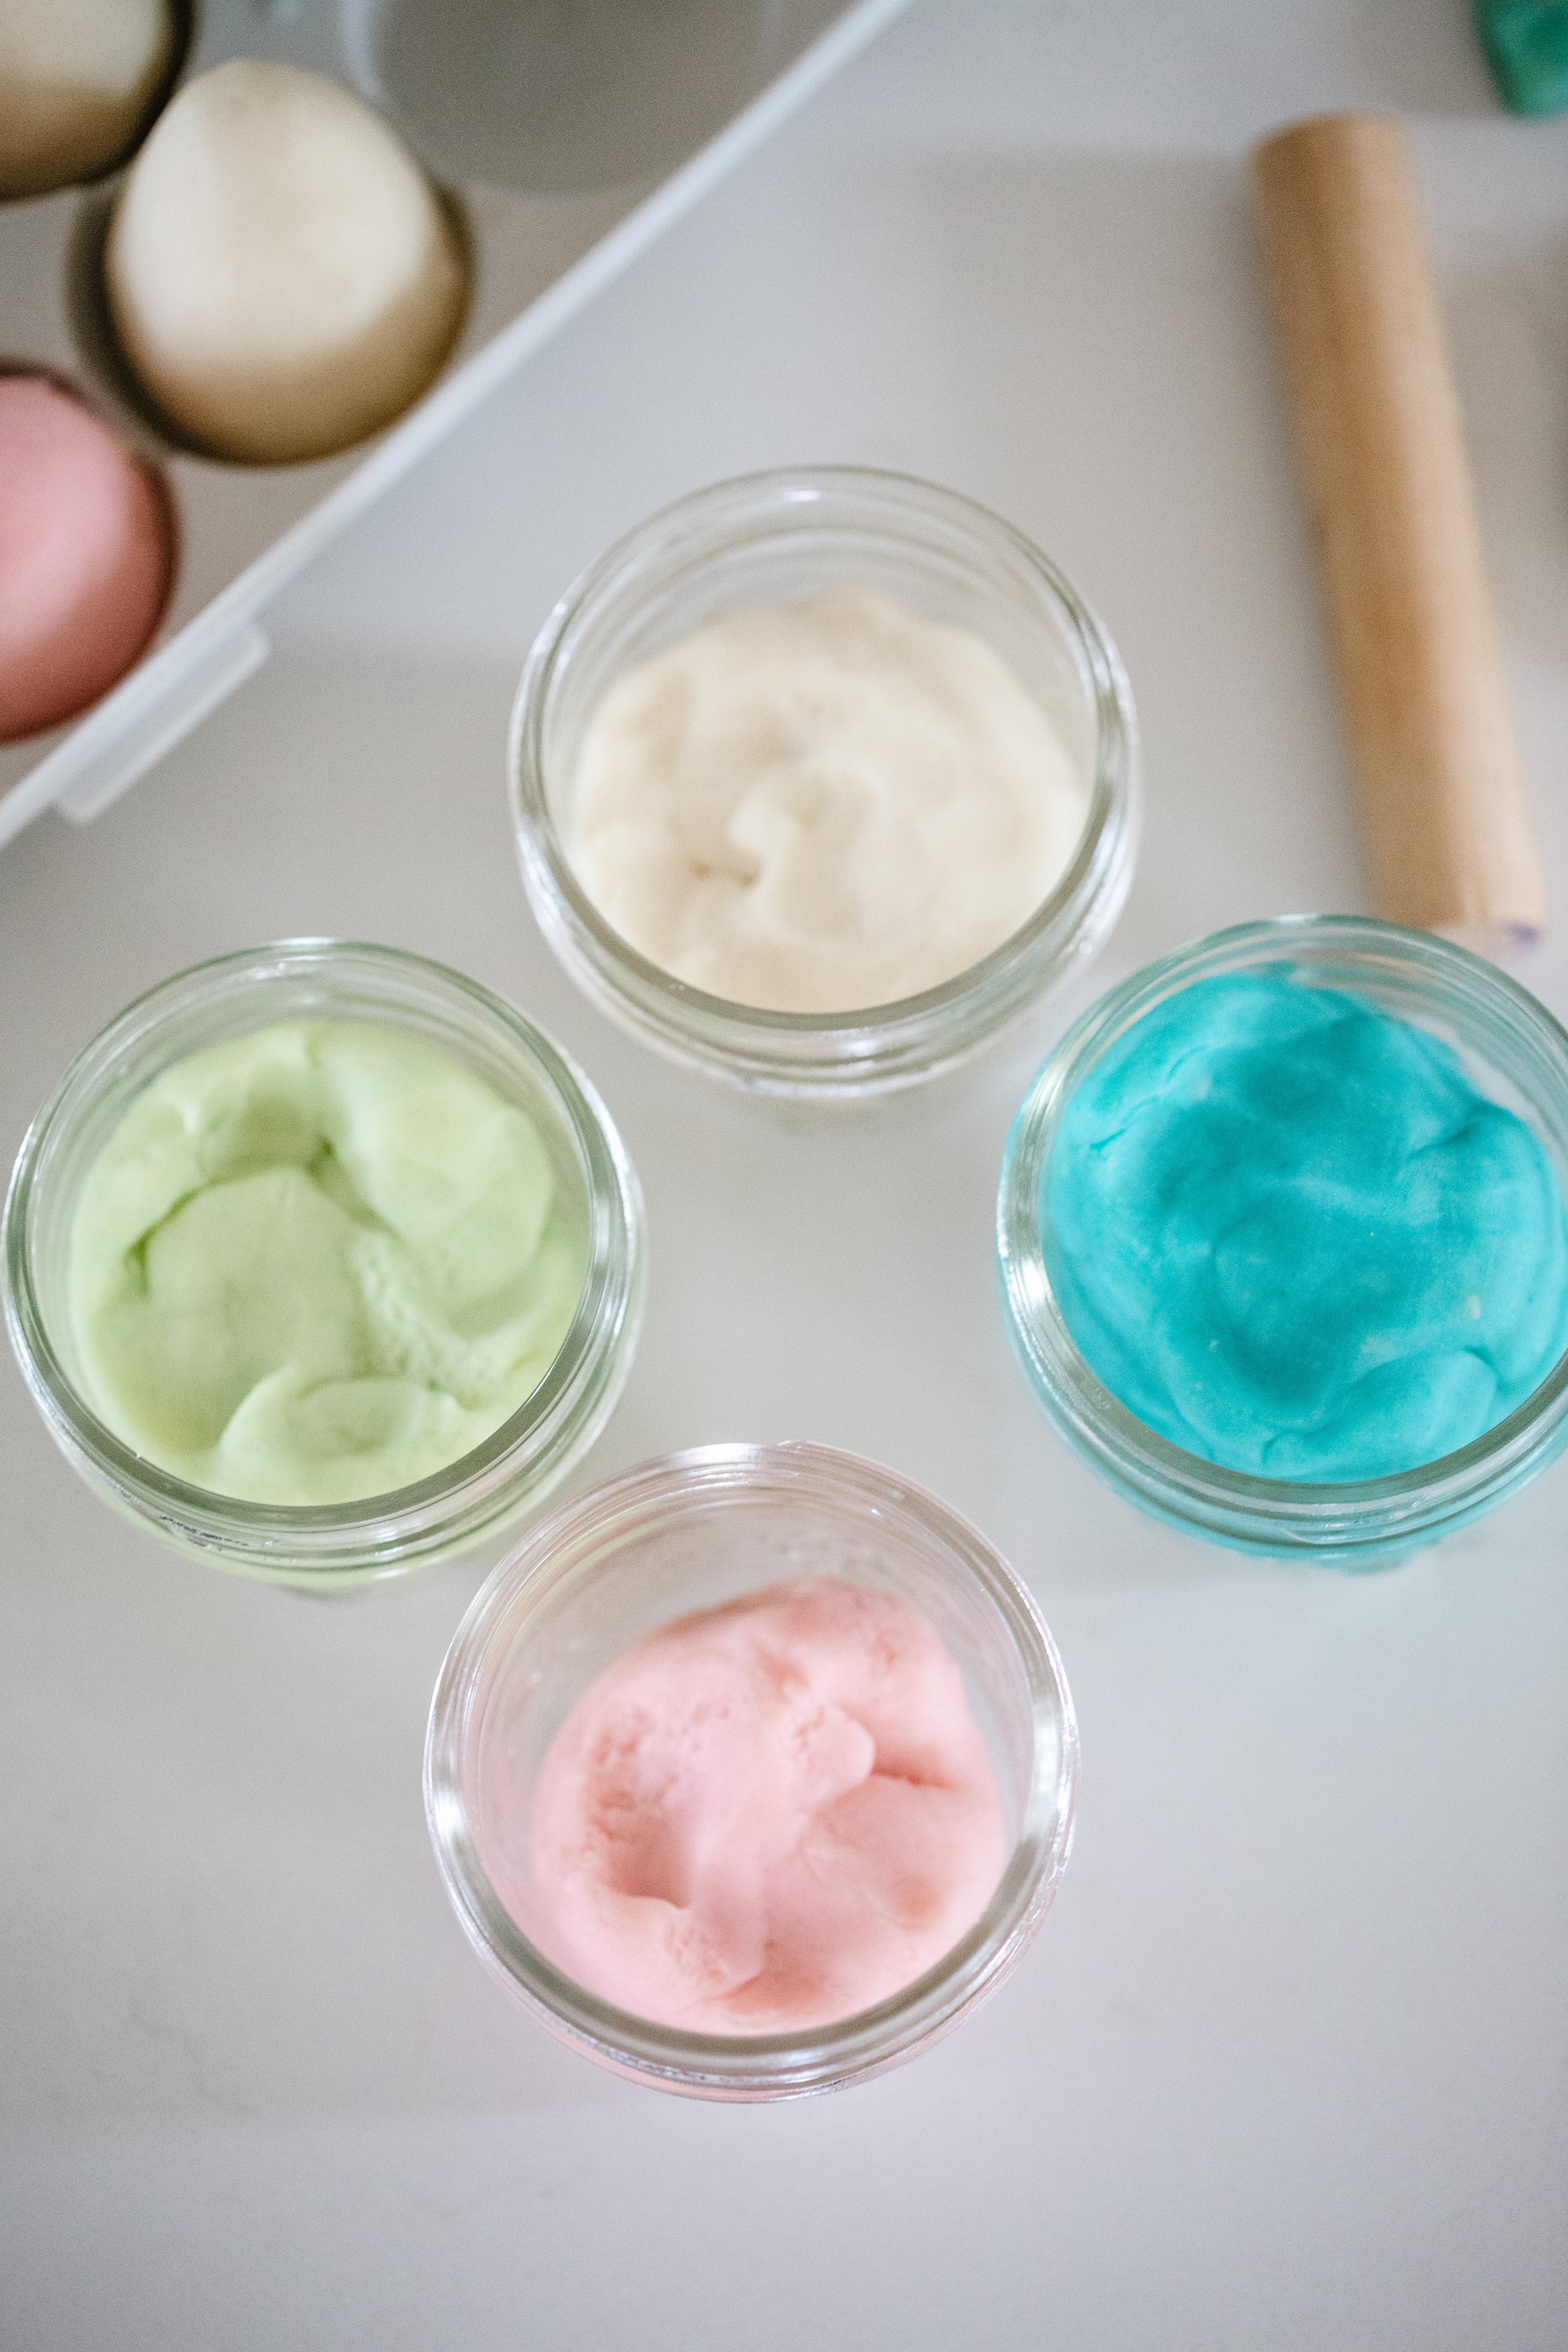 Make Homemade Nontoxic Playdough For Endless Fun! - Giggle Magazine